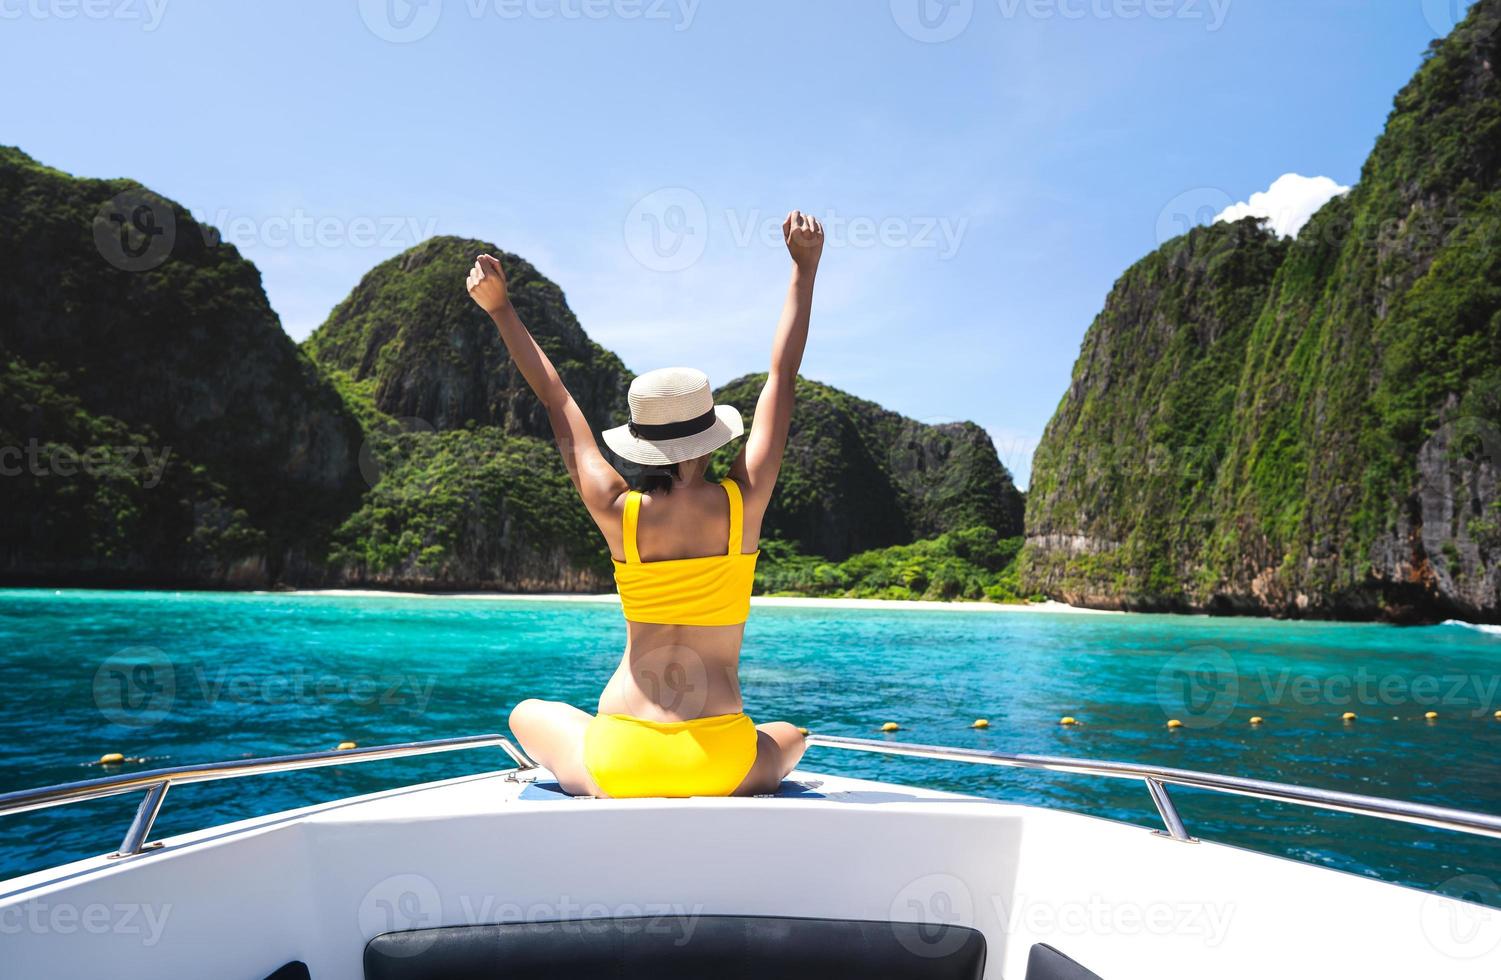 bak- se av vuxen reser kvinna koppla av ärm sträcka på de segling båt med sommar ö och hav foto